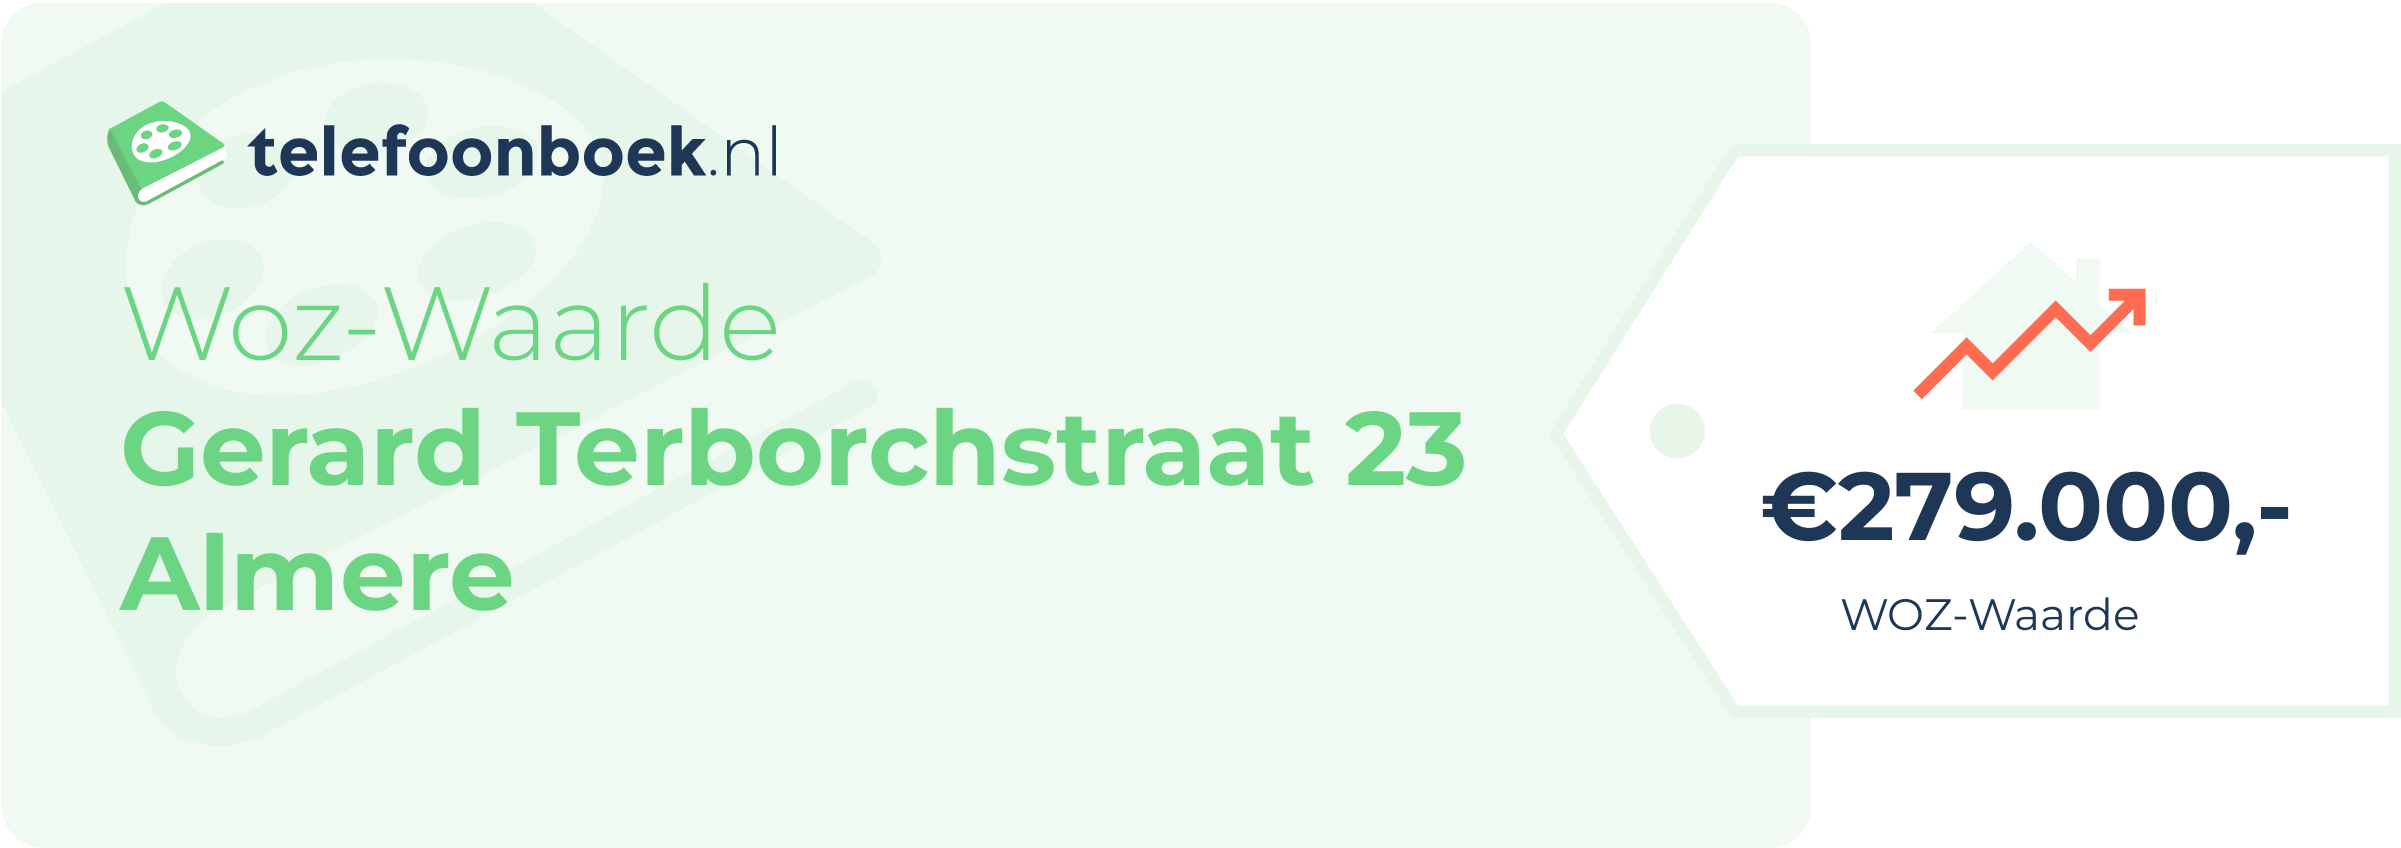 WOZ-waarde Gerard Terborchstraat 23 Almere